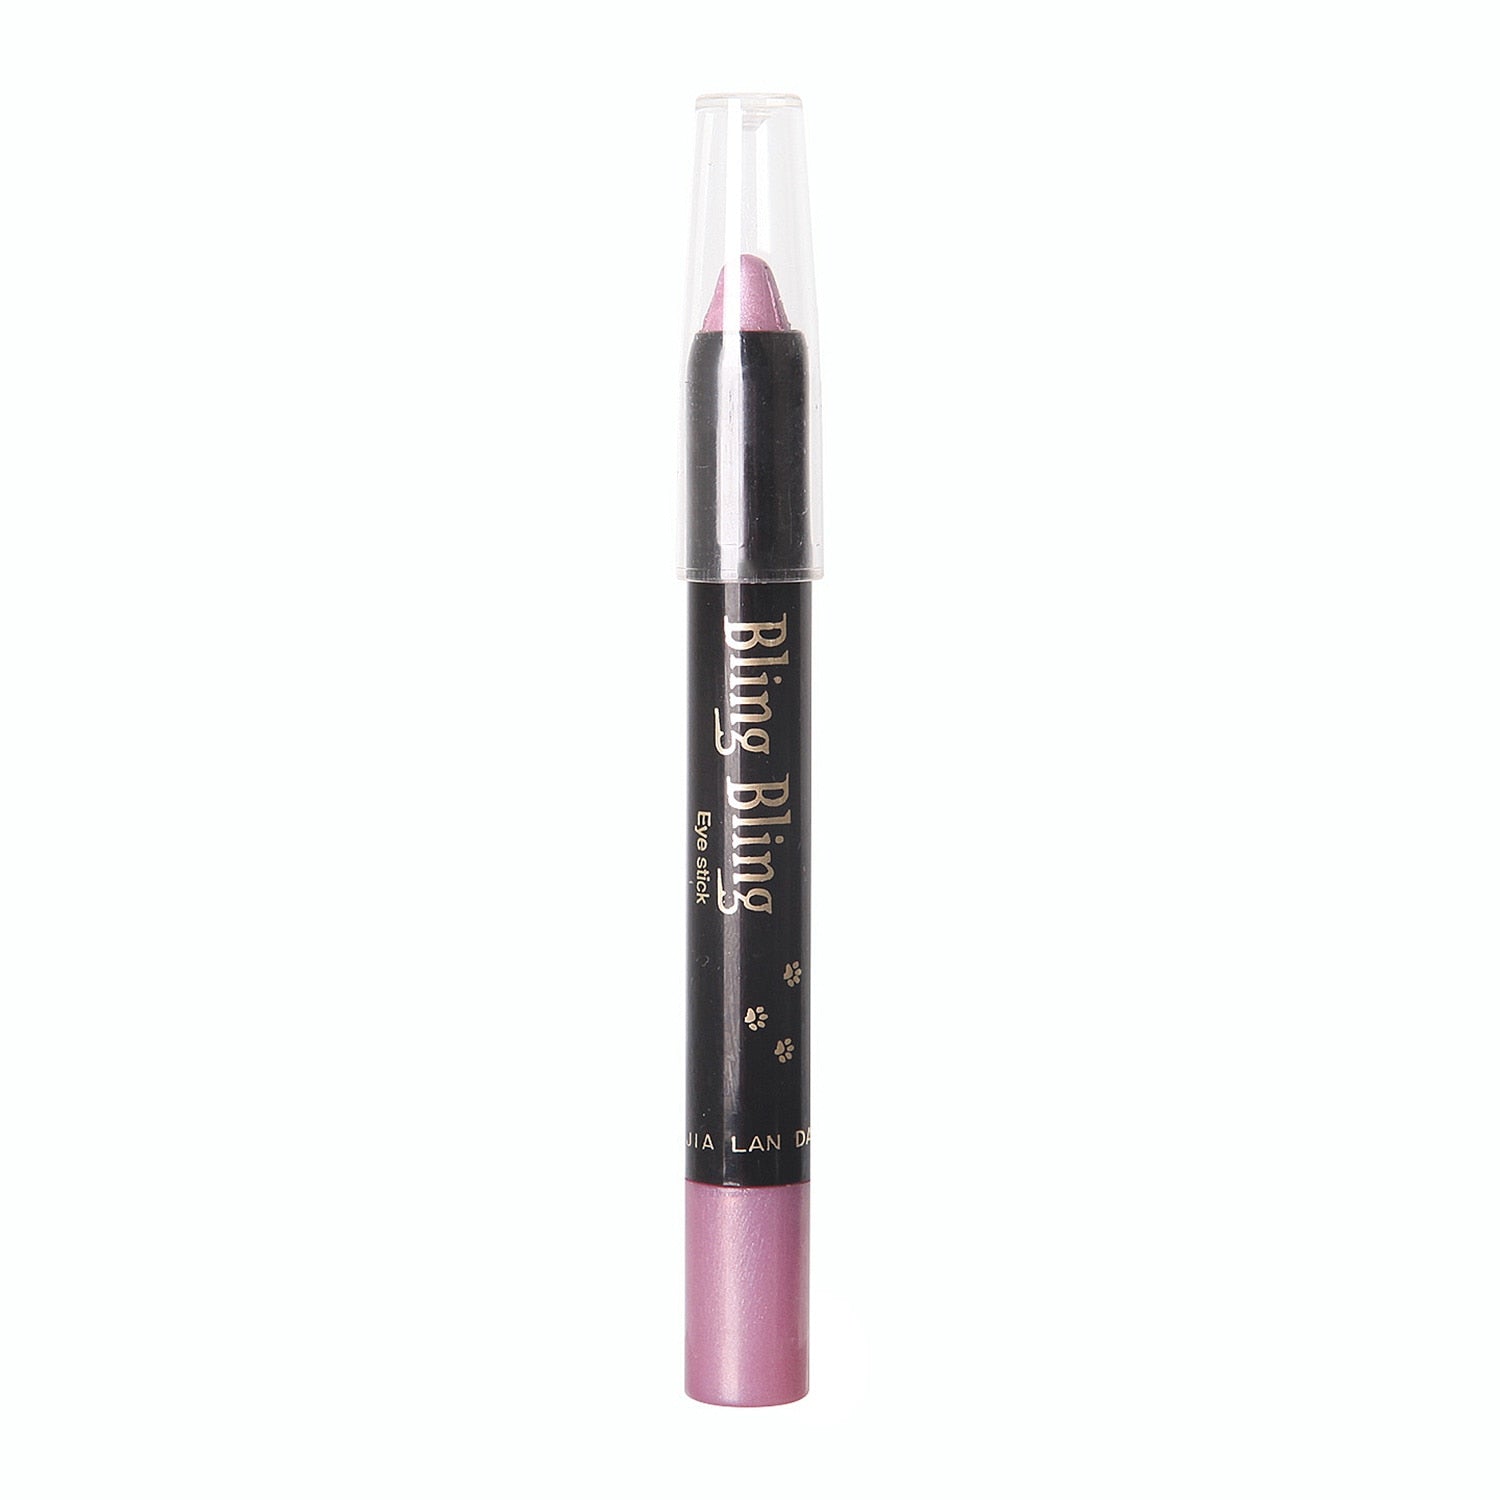 15 Colors Waterproof Long Lasting Pearlescent Eyeshadow Pencil